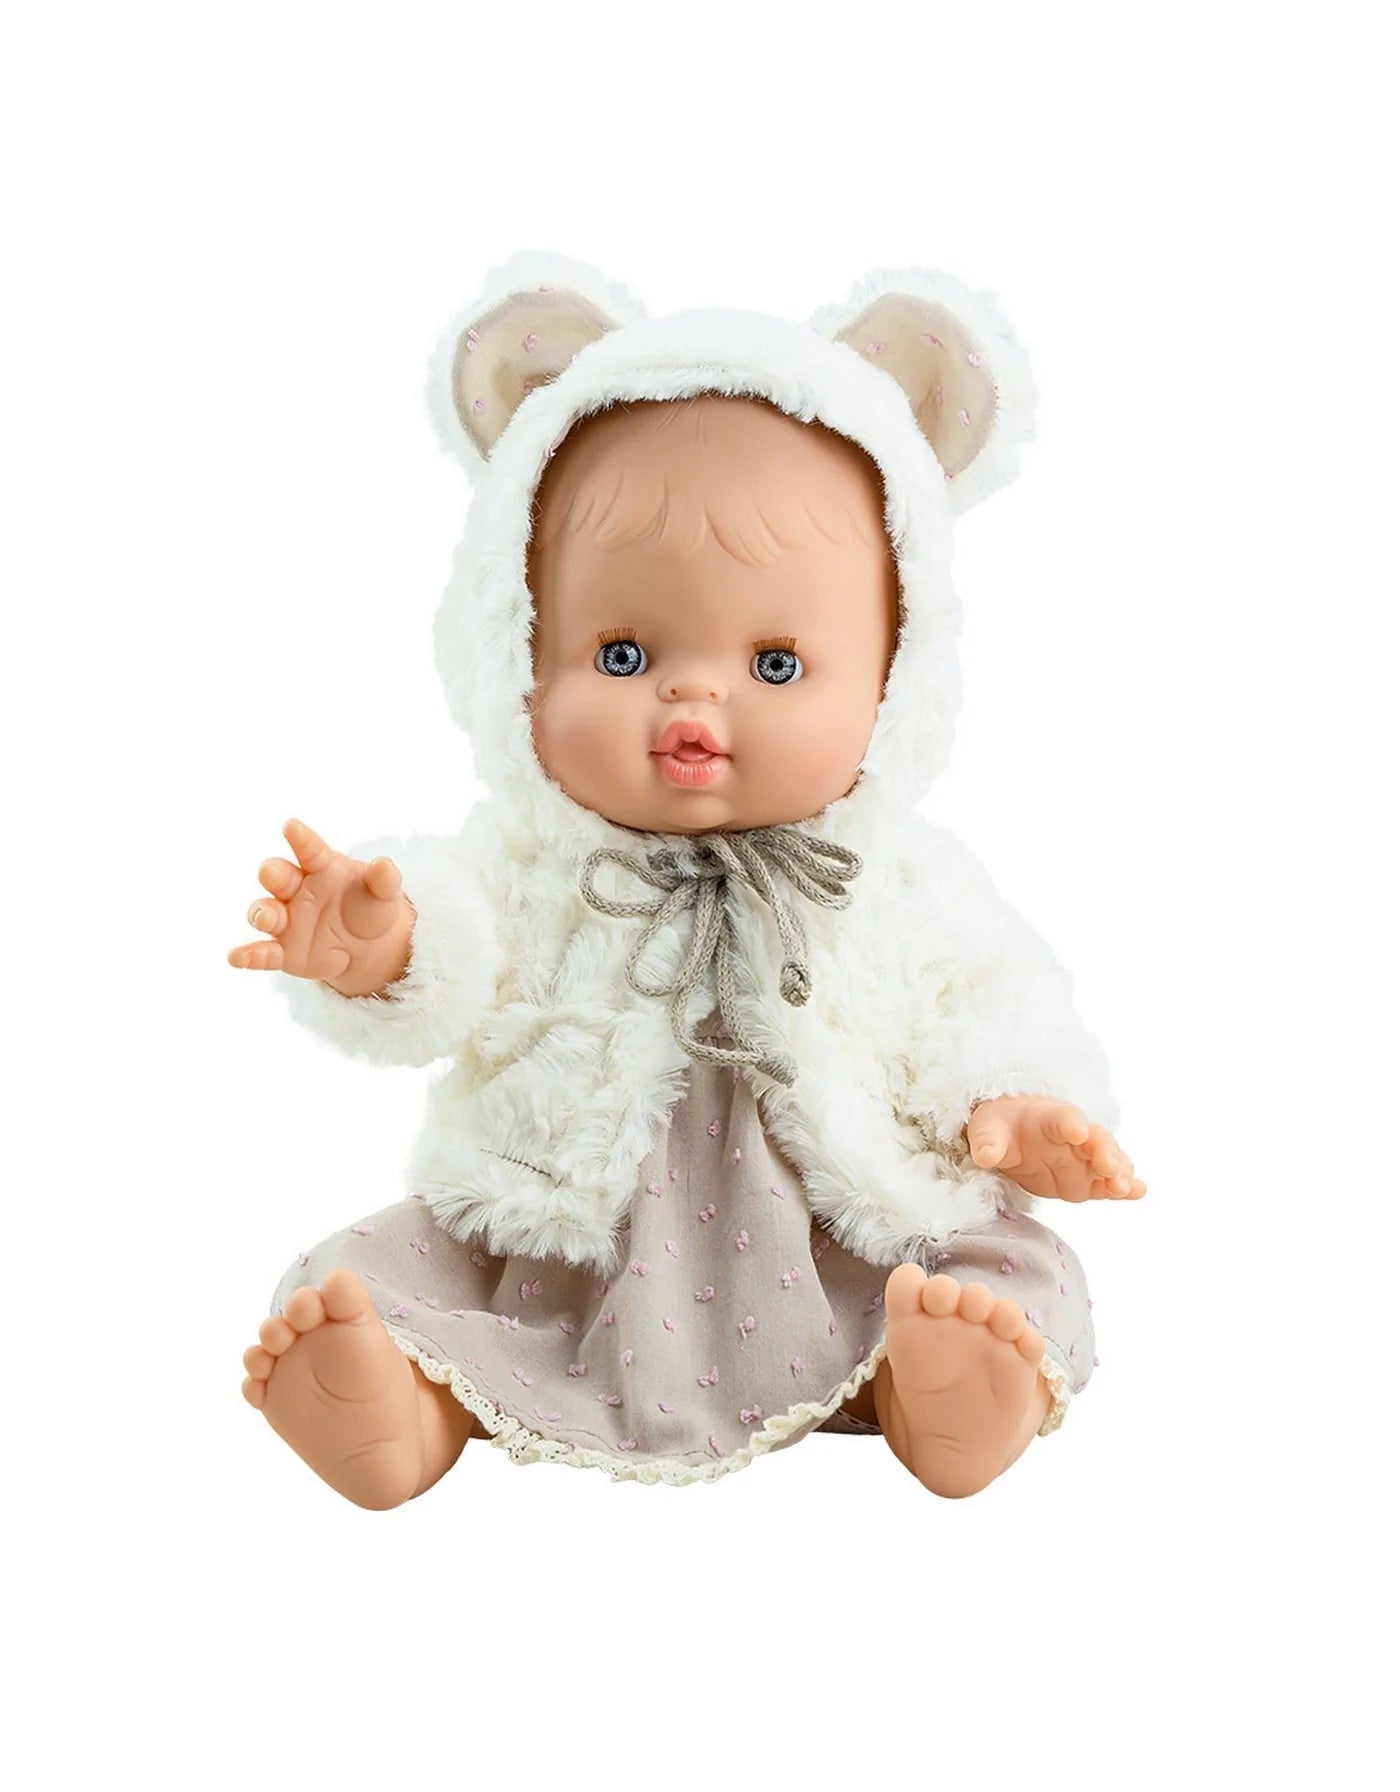 Robe et veste à capuche ours en fourrure pour poupée Gordis Paola Reina